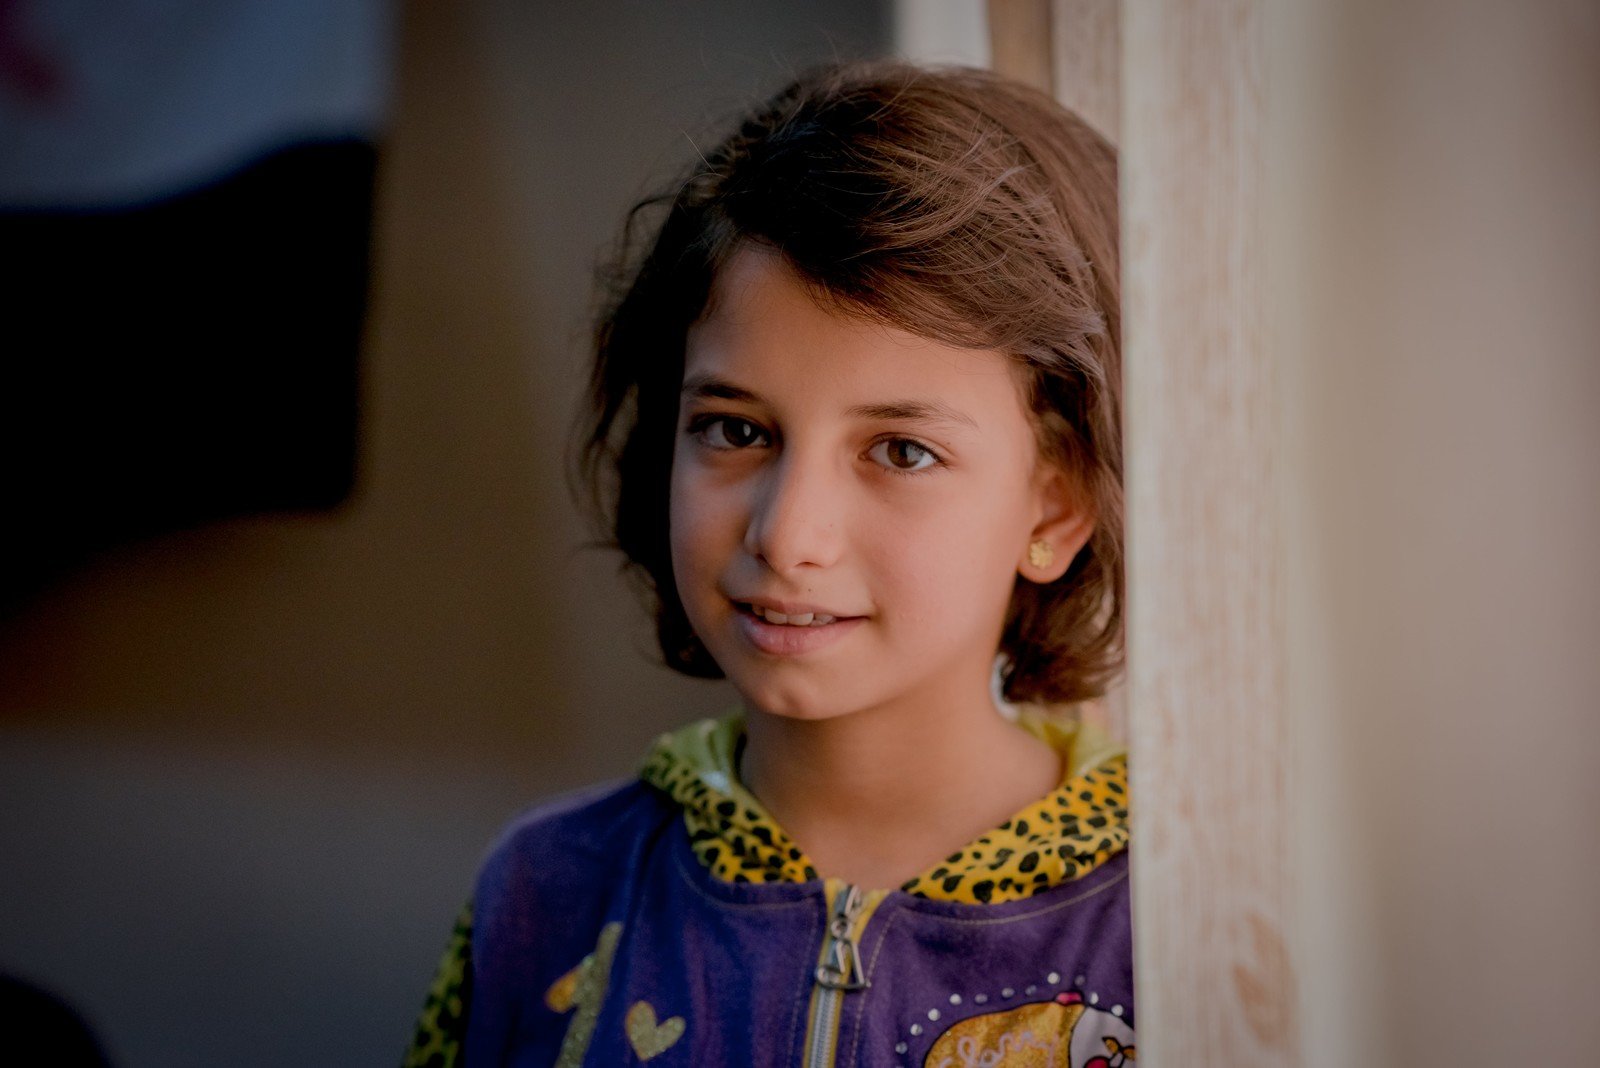 11岁的Sara与父亲等一家七口原居于叙利亚霍姆斯（Homs）。战争开始时，他们一家由家乡驱车南下，途中Sara头部遭枪击所伤。乐施会义务摄影师潘蔚能与乐施会负责人道项目的同事探访Sara一家，她和父亲对我们讲述逃离叙利亚时的惊险情景。现在她和家人居于约旦东北部地区的一幢大厦内。  而Sara的梦想，是能够成为医生，「因为可以帮助别人。」她说。 (摄影:潘蔚能/乐施会)